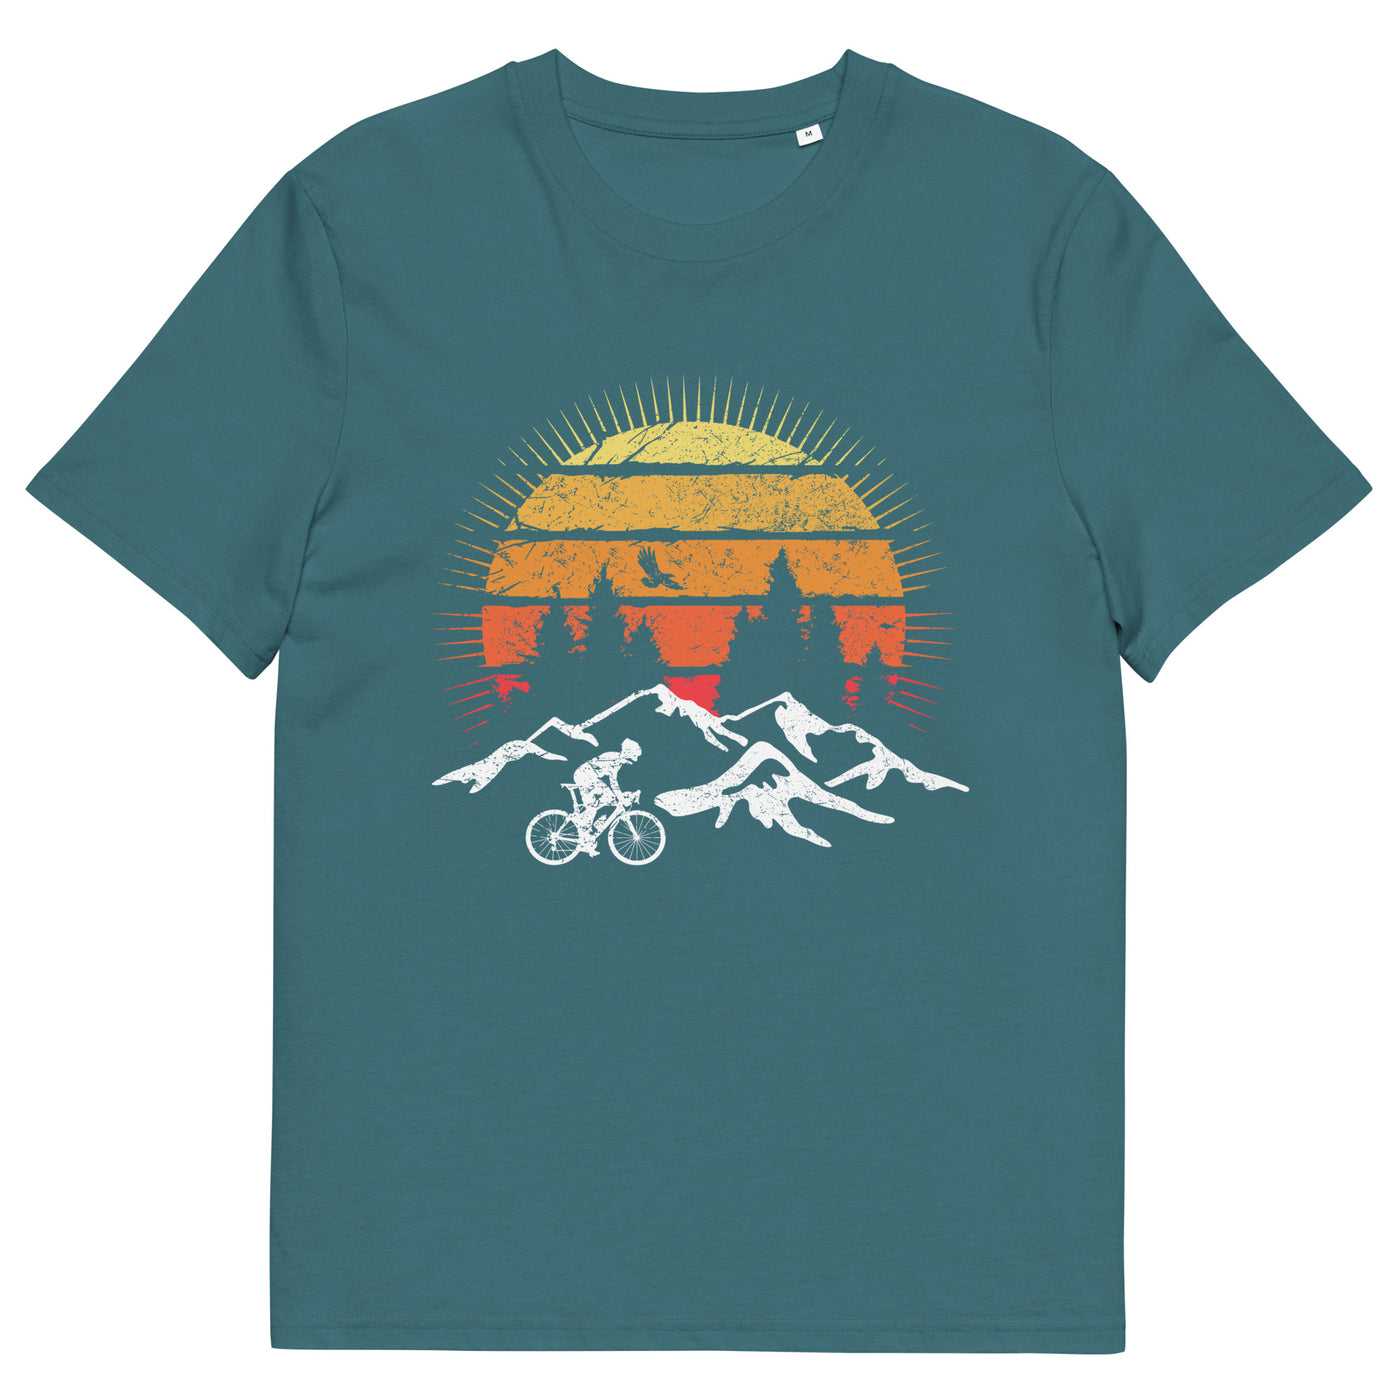 Radfahrer und Sonne Vintage - Herren Premium Organic T-Shirt fahrrad xxx yyy zzz Stargazer